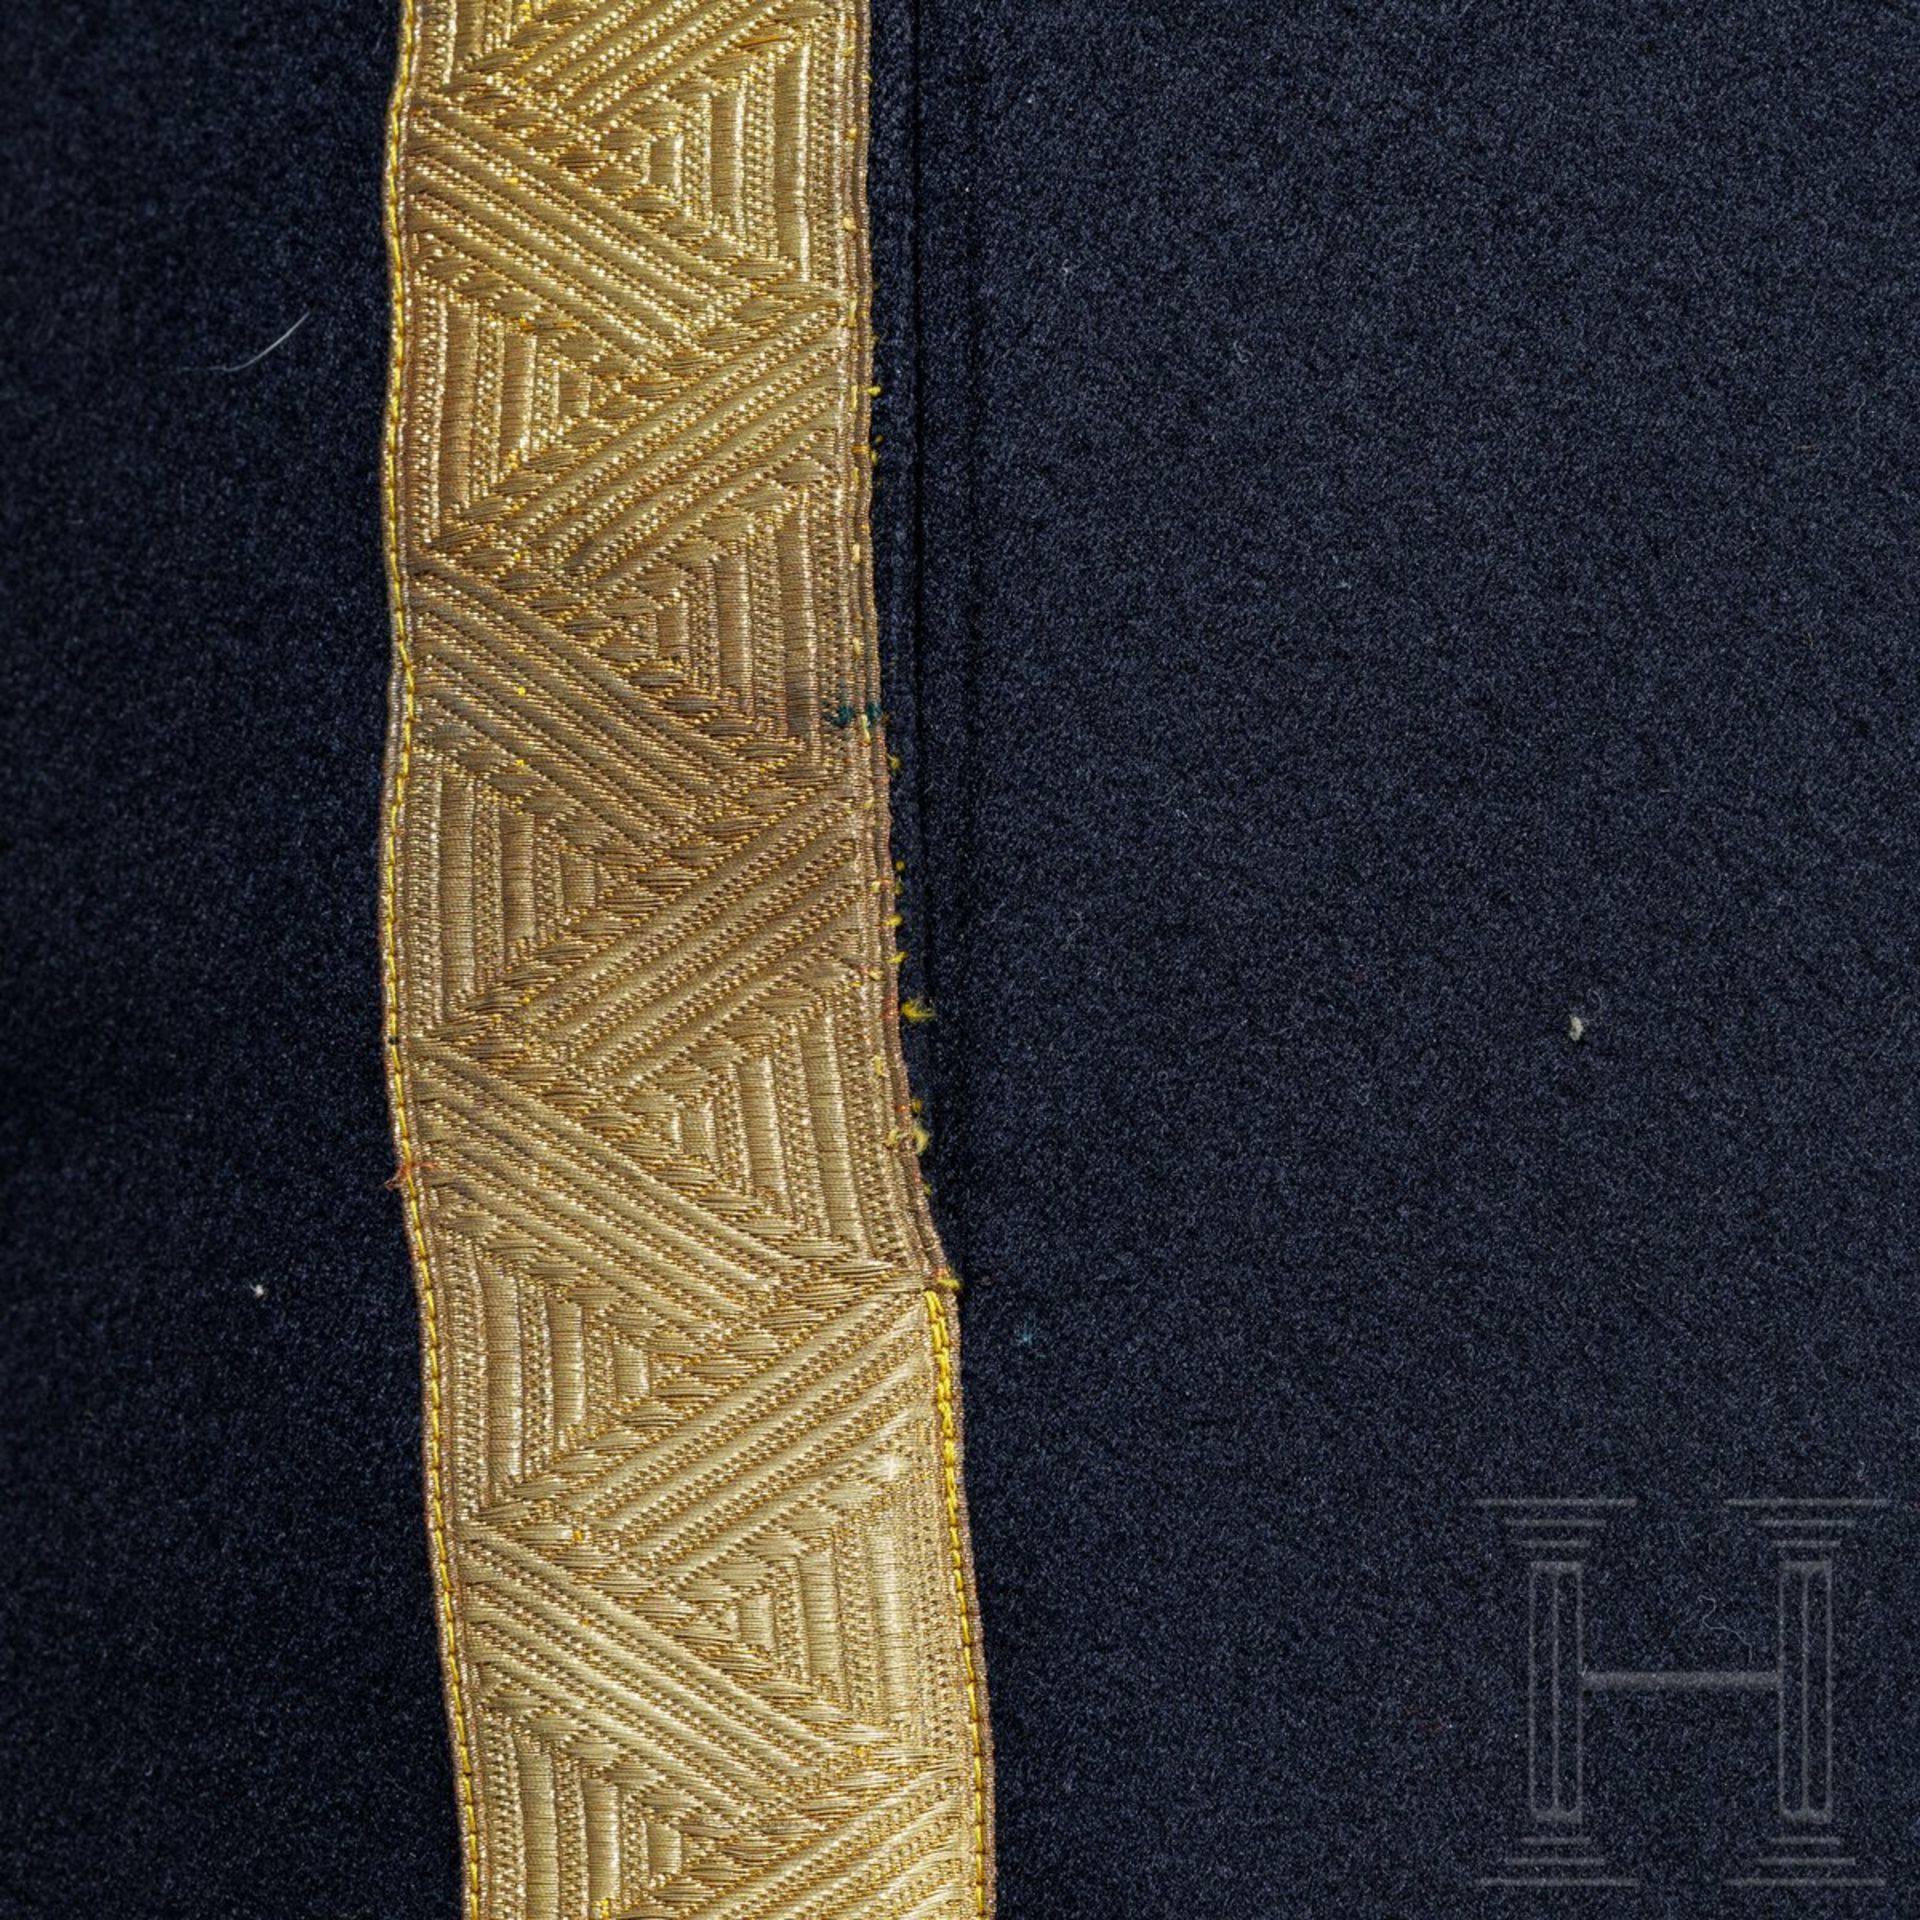 Hose zur Gala-Uniform, wohl für k.u.k. Beamte, um 1900 - Bild 3 aus 4